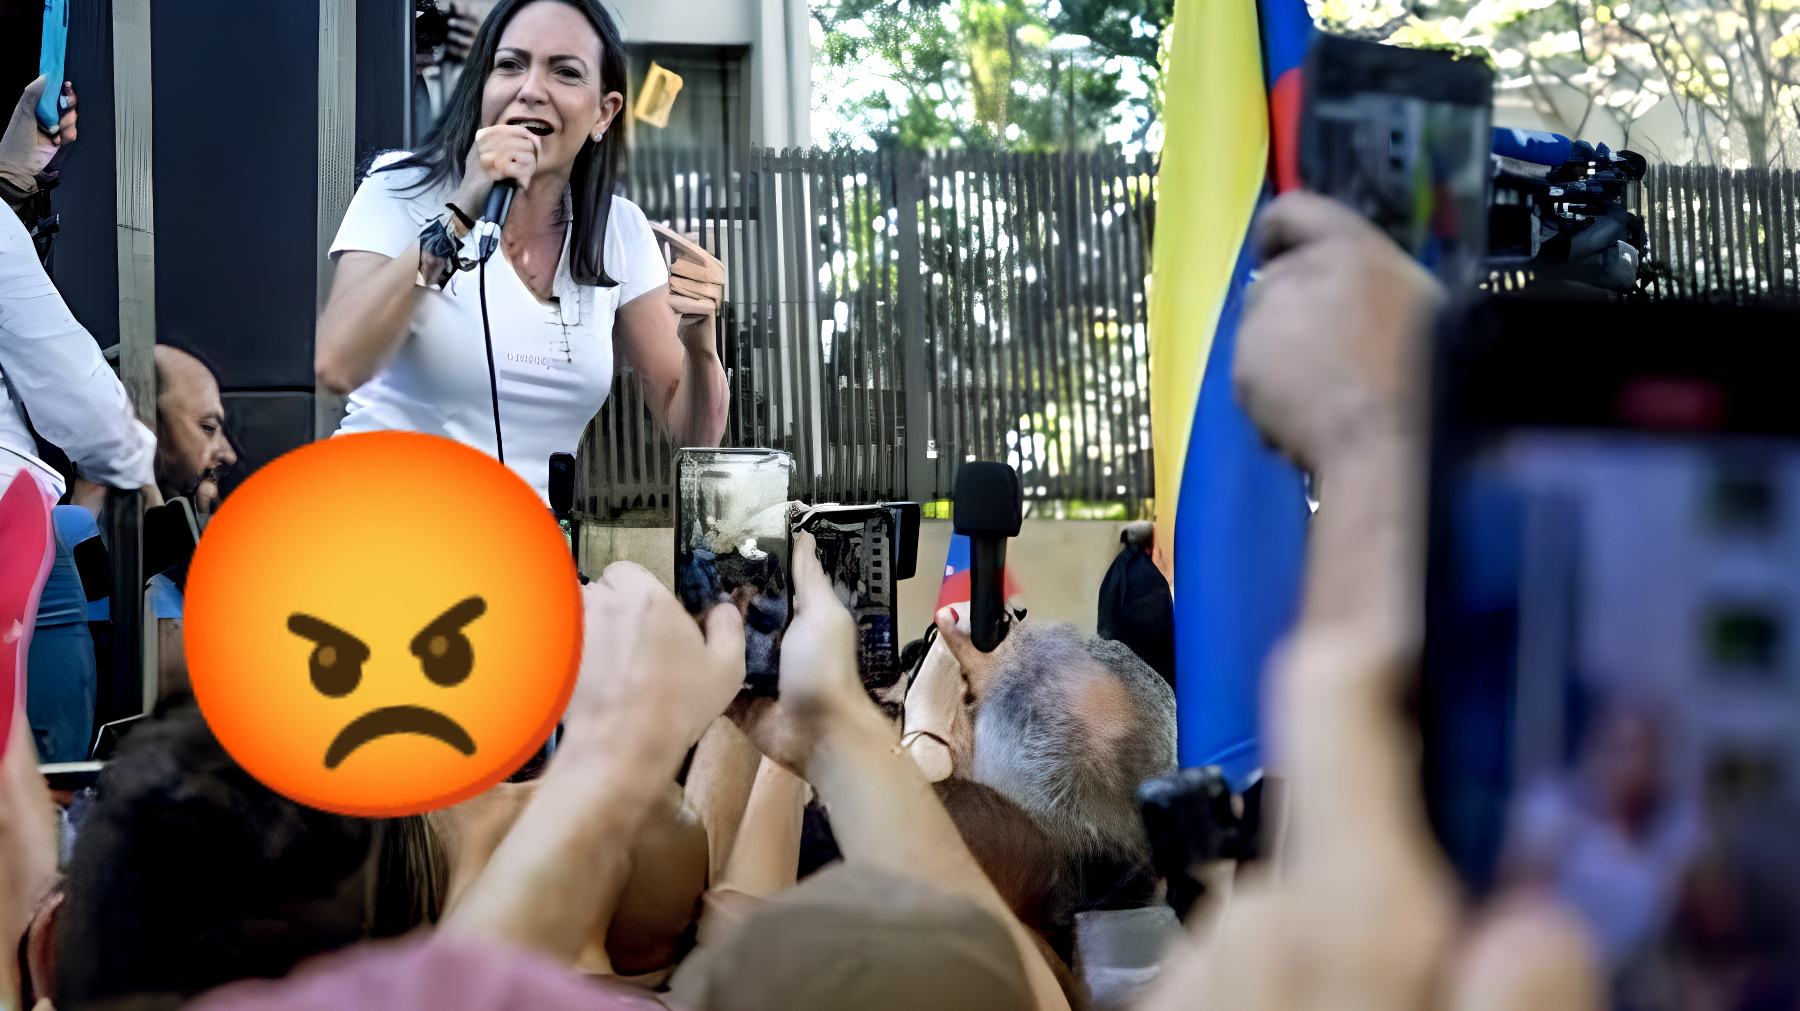 Scandalo in Venezuela: arresti e intimidazioni contro attivisti coraggiosi